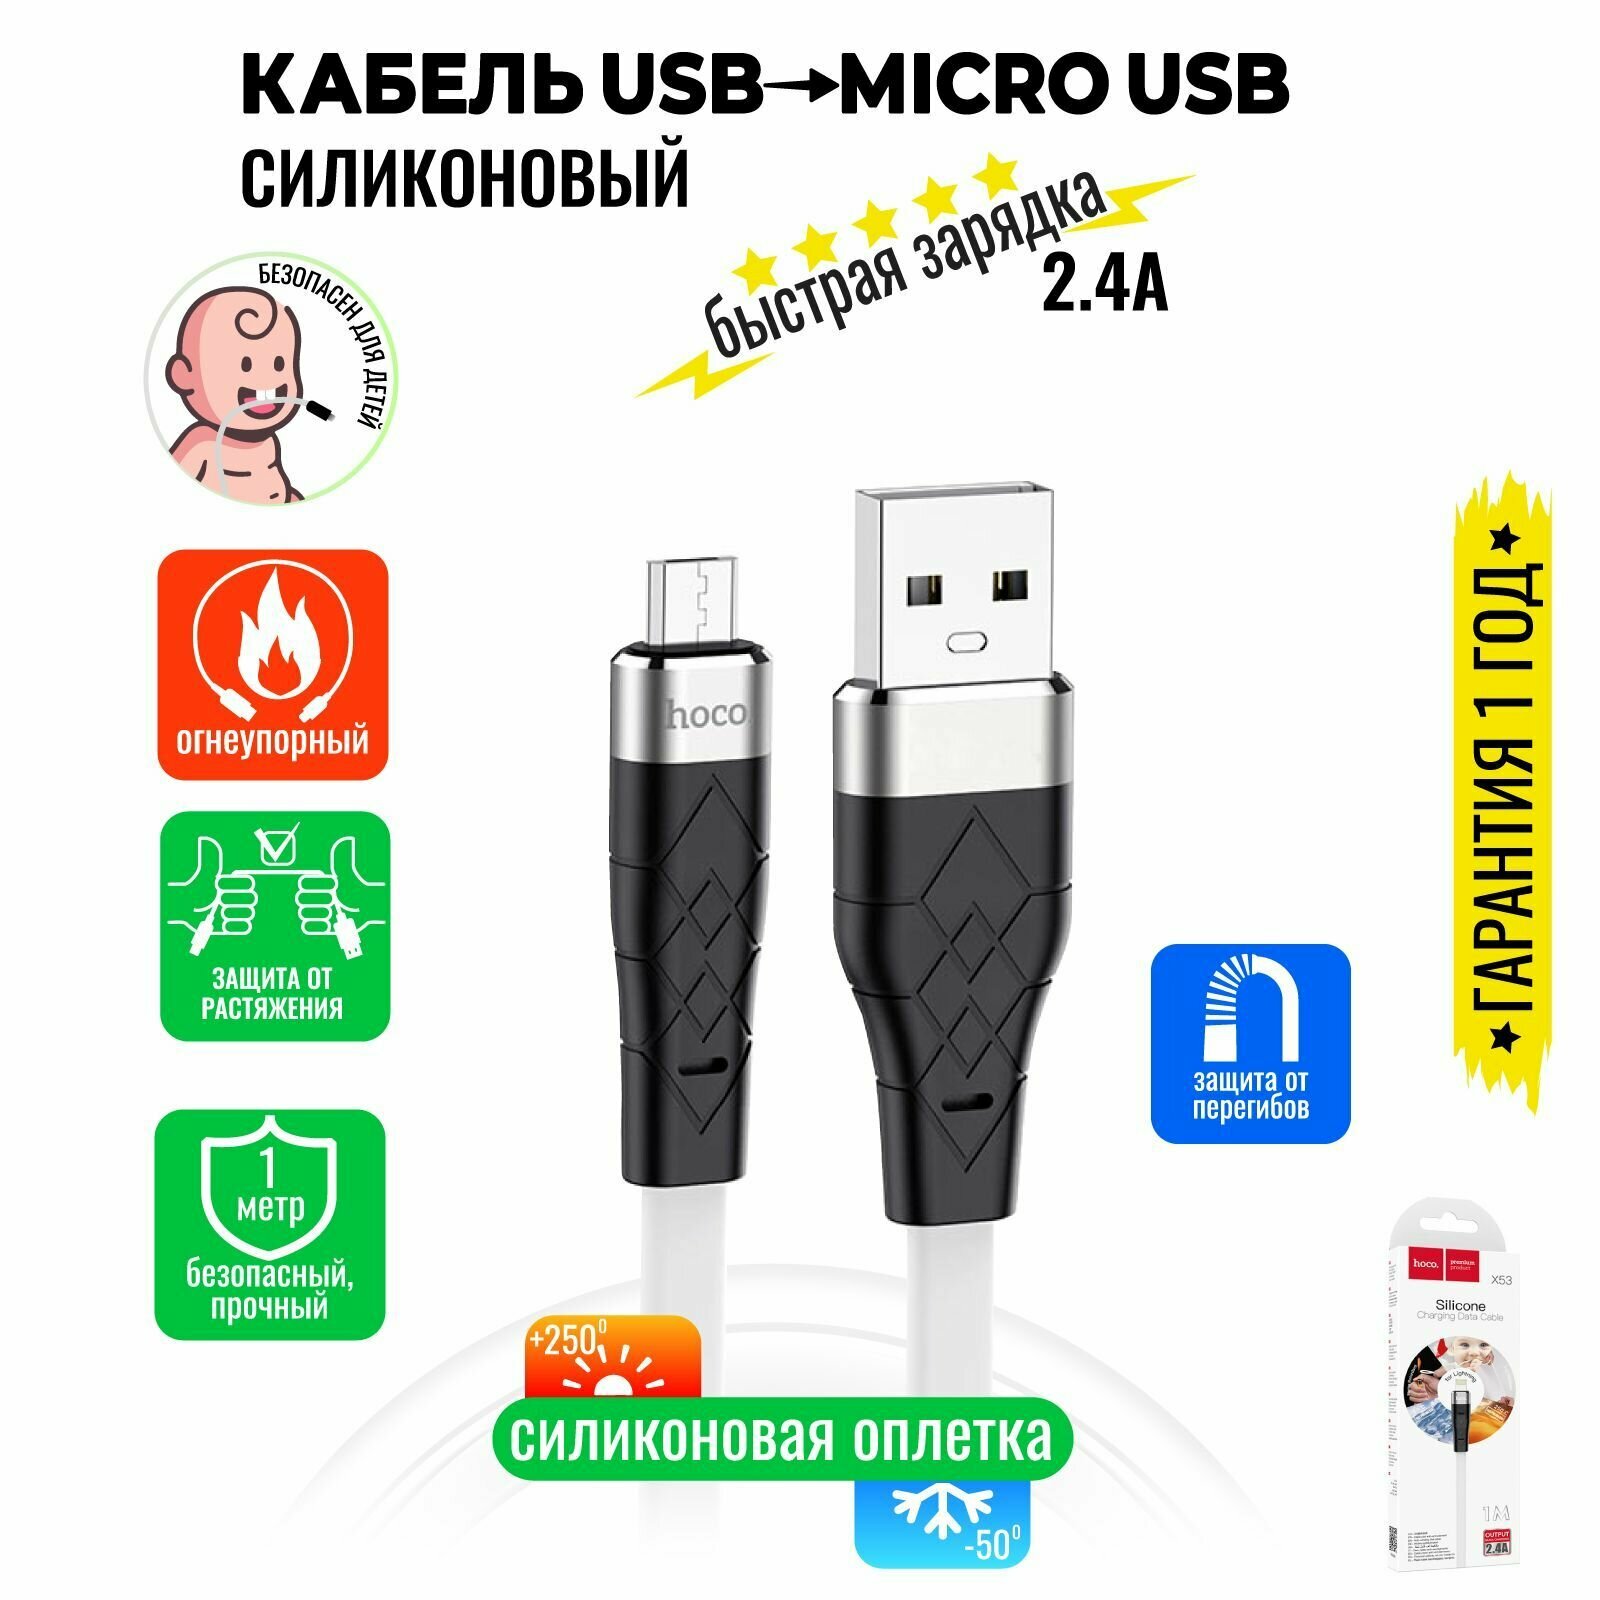 Кабель Micro USB, быстрая зарядка, 1 метр, силиконовый, передача данных / шнур для телефона микро юсб для Android / Провод для андройд / Hoco. X53